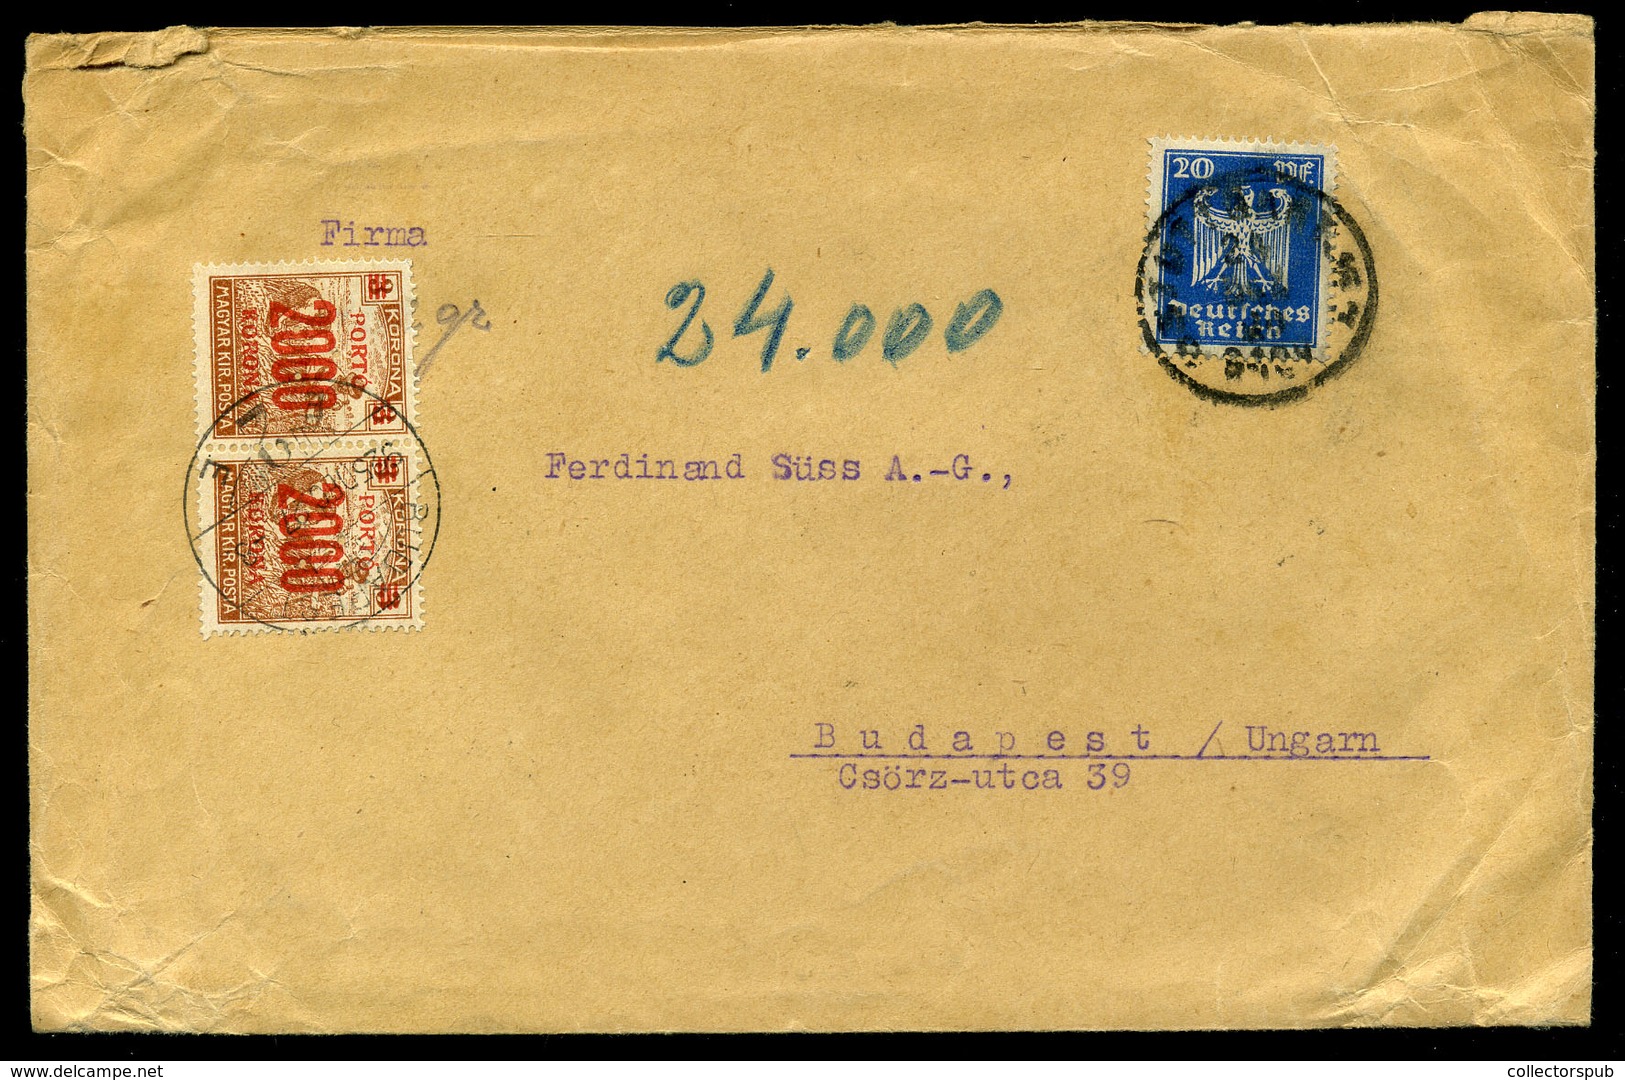 1925 Levél Németországból, 6 Bélyeges 24000K-s Inflációs Portózással  /  Letter From Germany 6 Stamp 24000K Infl. Postag - Briefe U. Dokumente